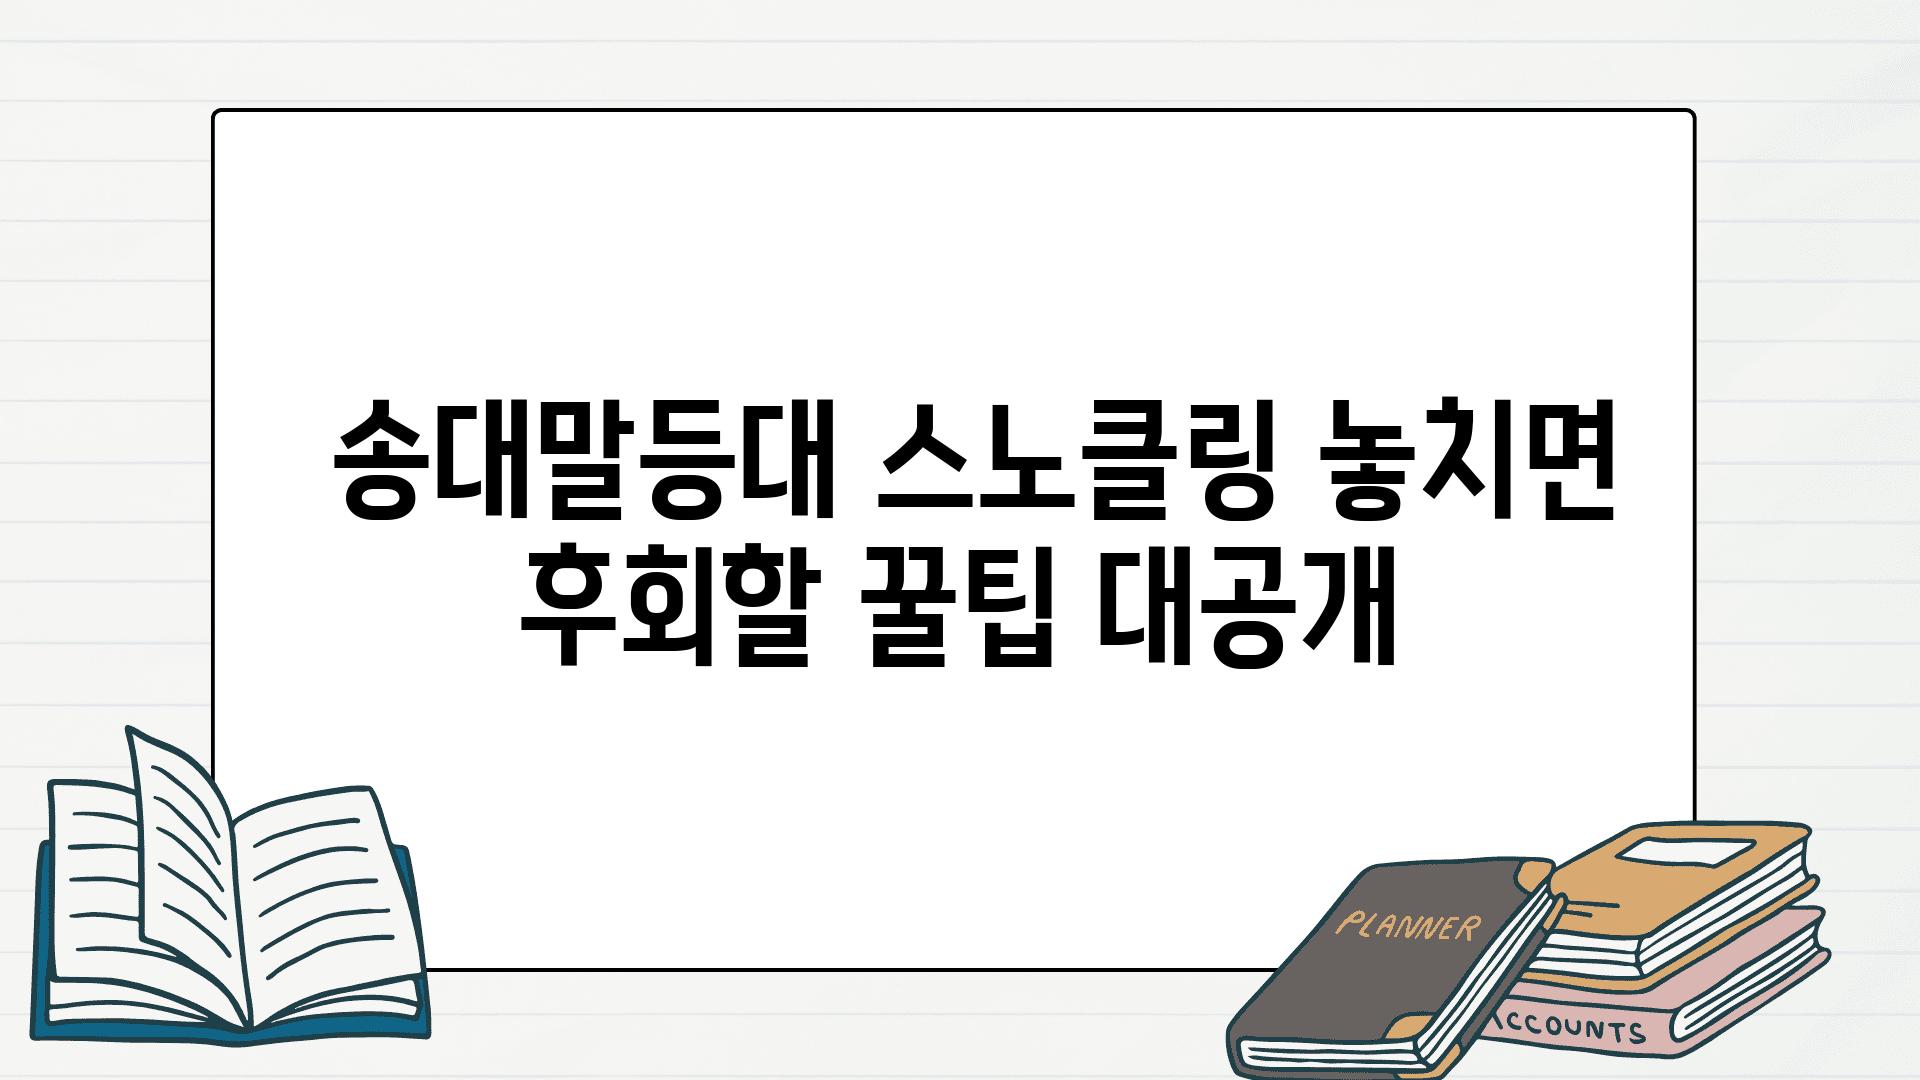  송대말등대 스노클링 놓치면 후회할 꿀팁 대공개